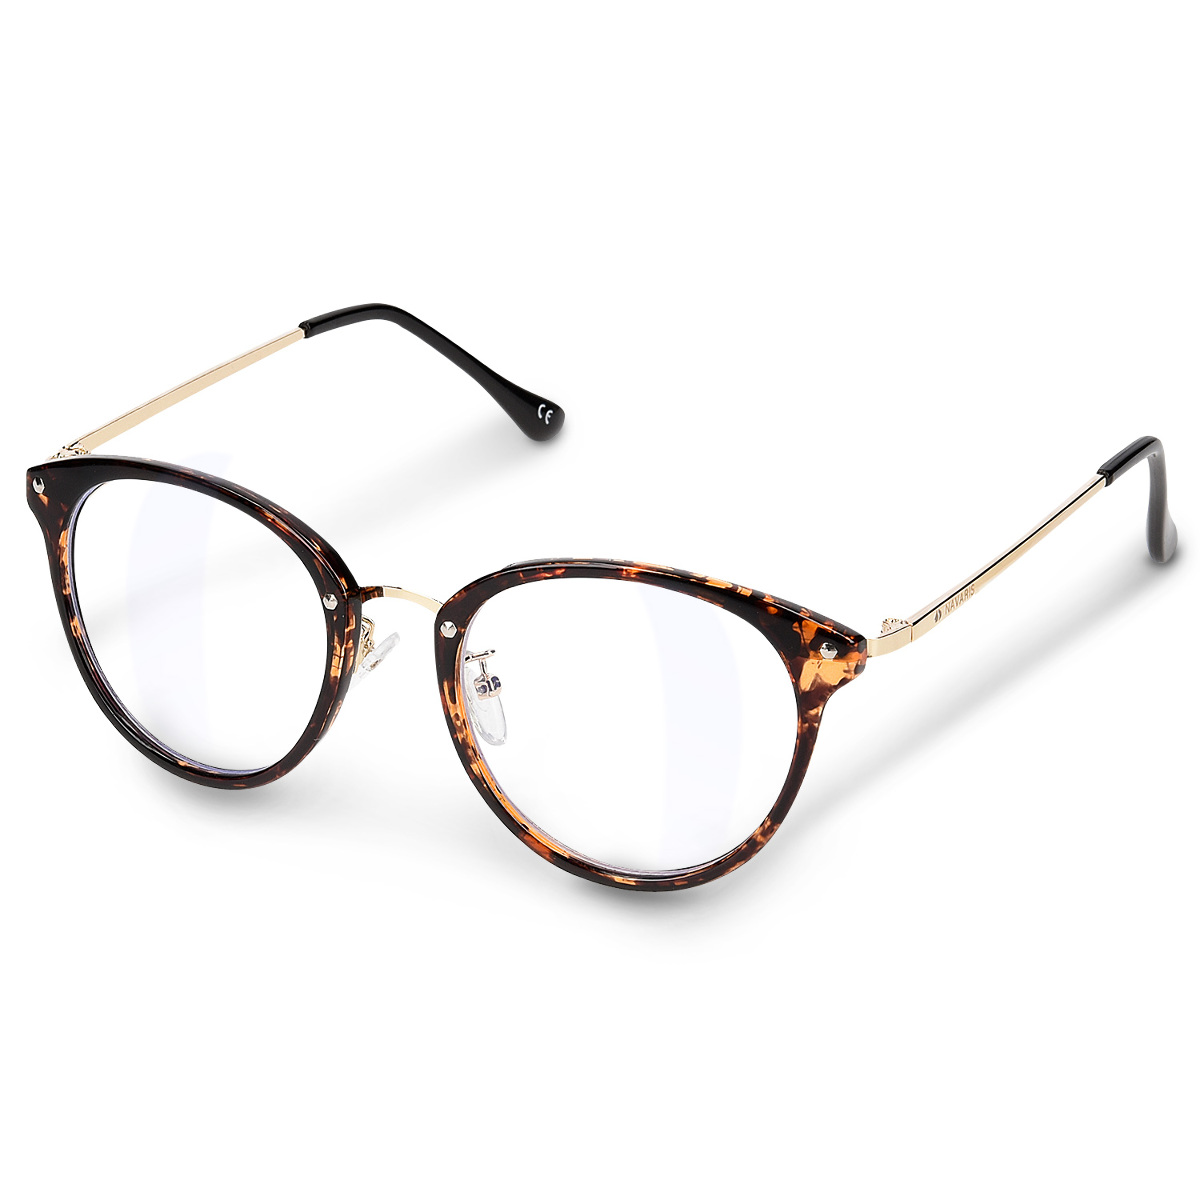 KOOSUFA Klassische Retro Nerdbrille Damen Herren Brille Ohne Sehstärke Brillengestelle Rund Pantobrille Brillenfassung Fake Brille Vintage mit Etui